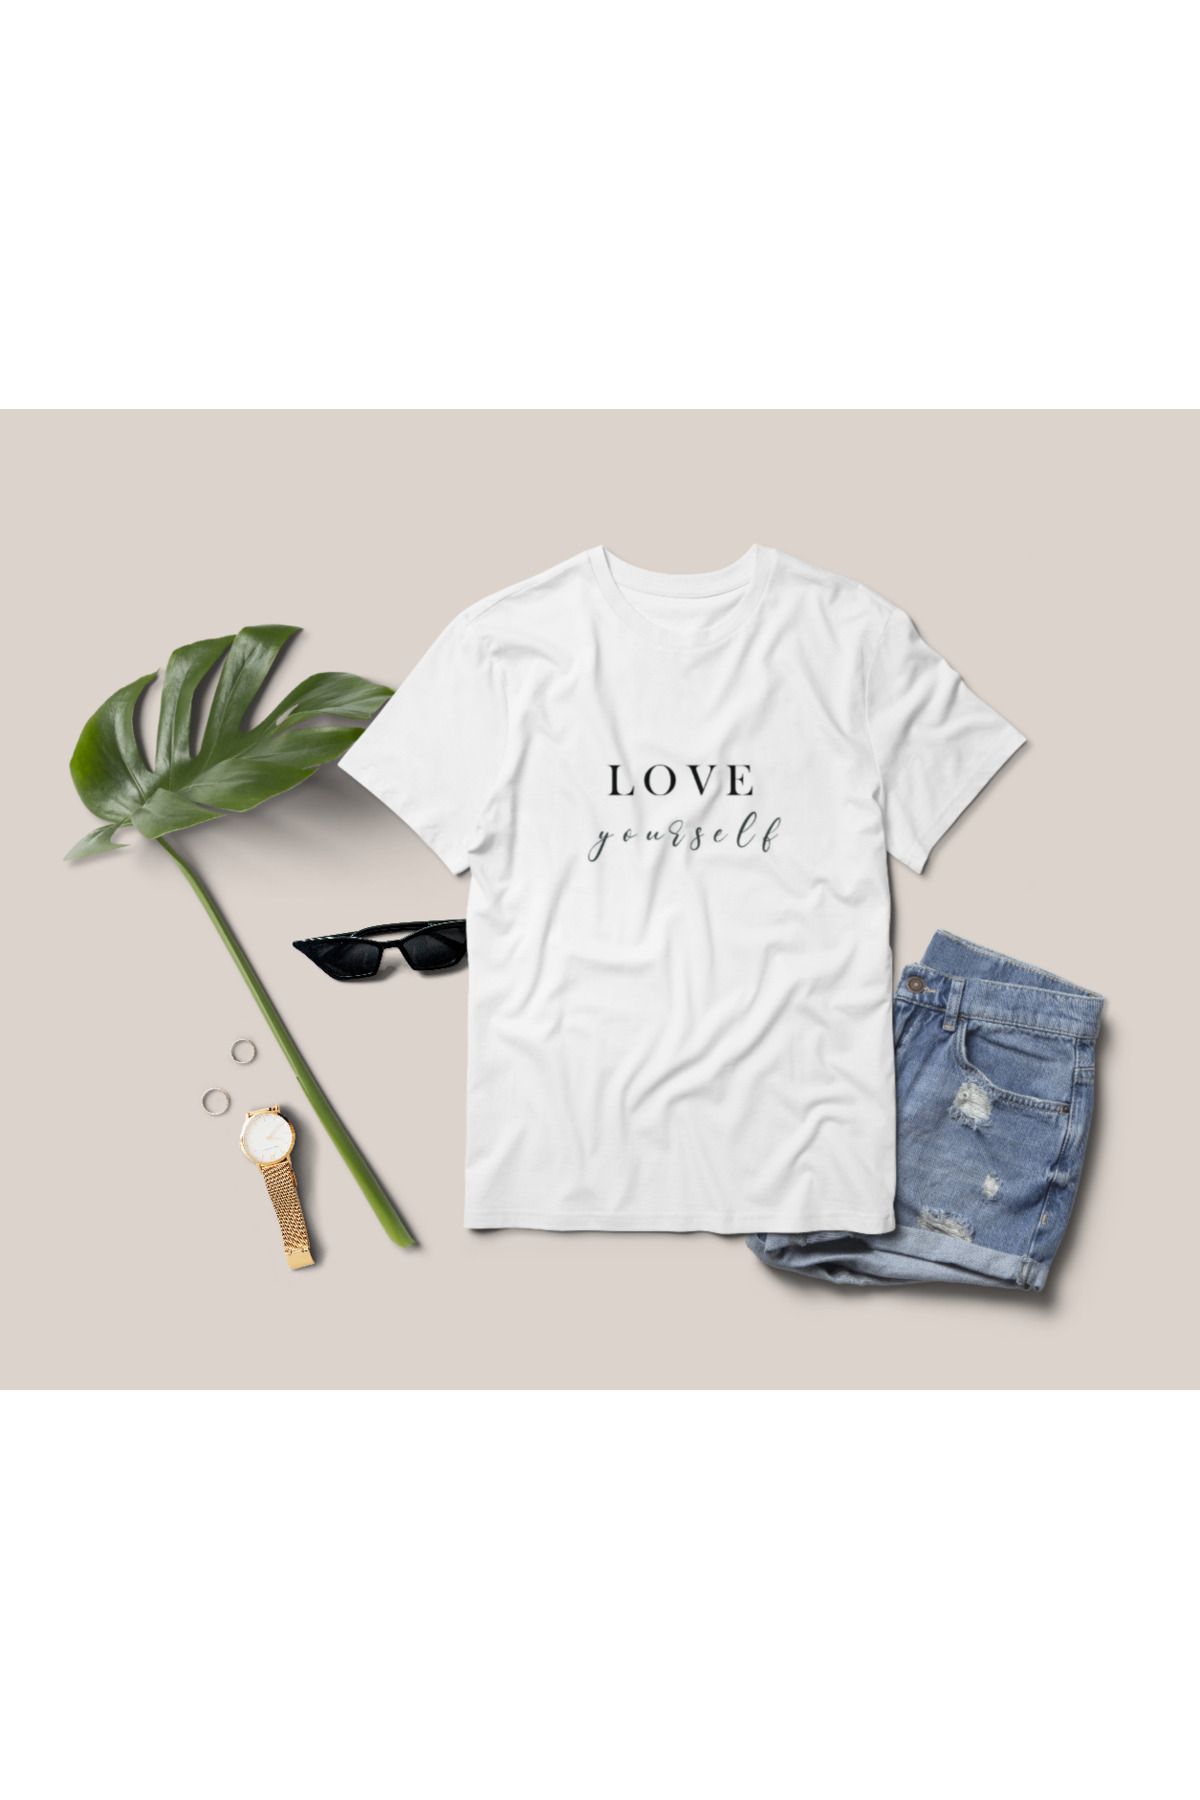 Tutti Love Yourself - kişiye özel tasarım tshirt